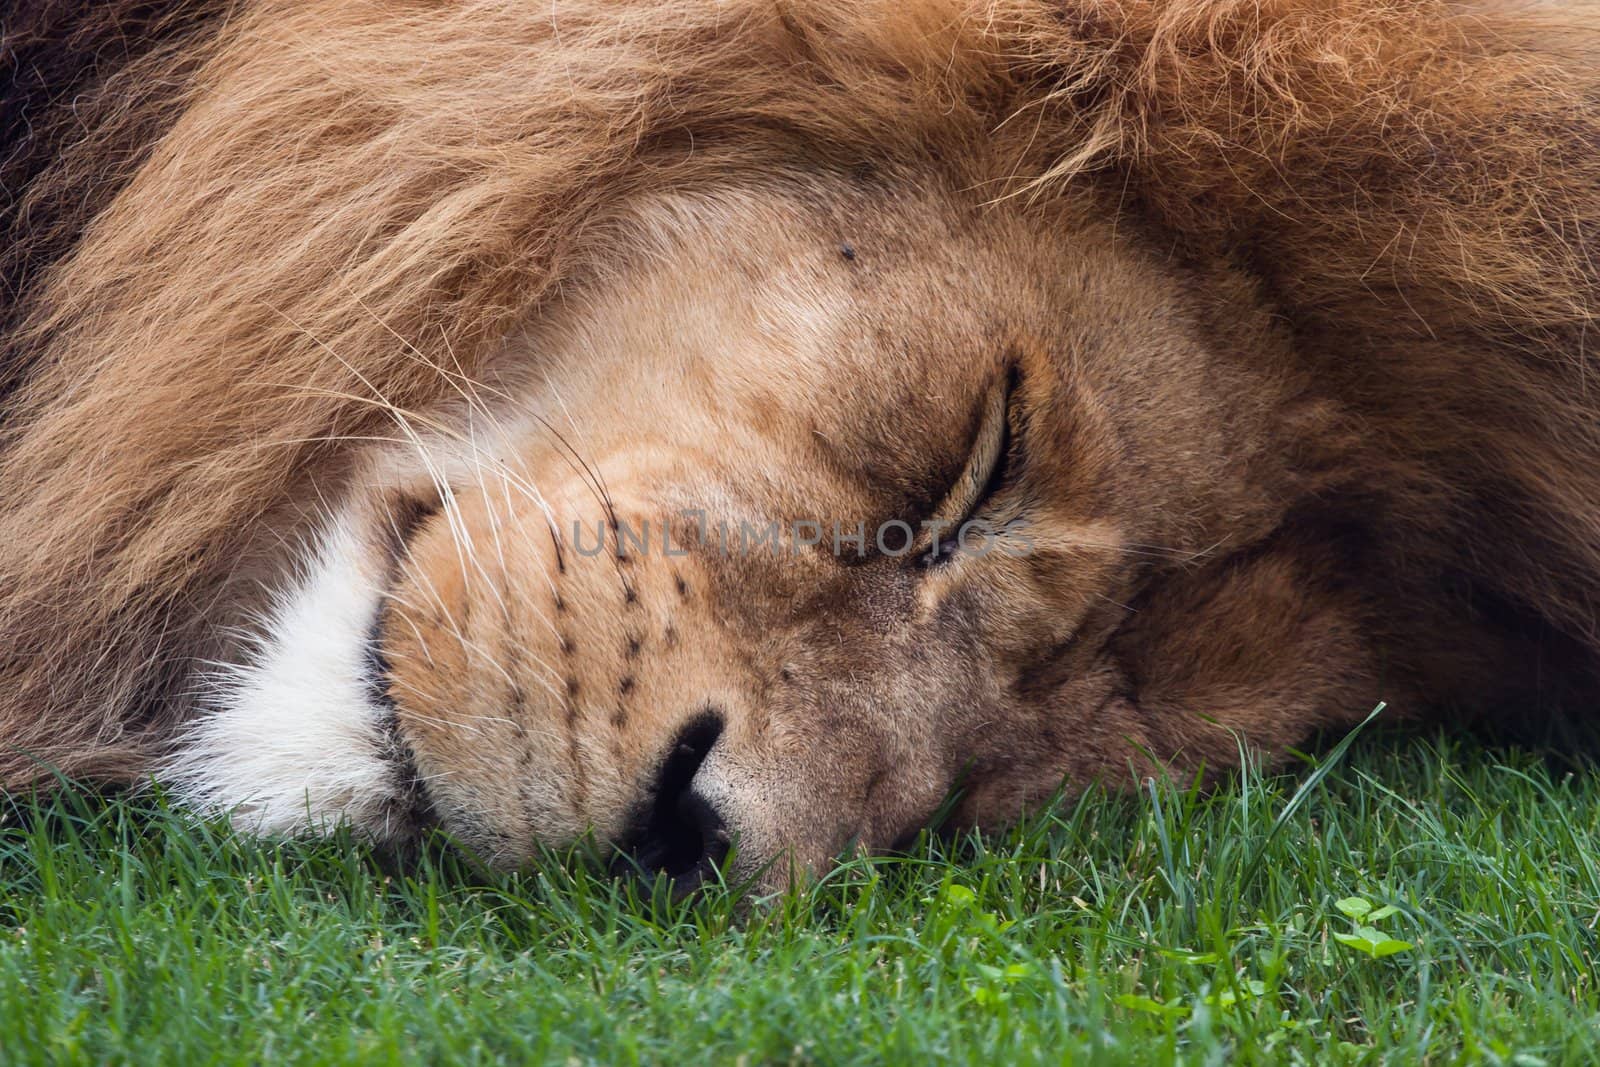 Sleeping lion by benjaminet